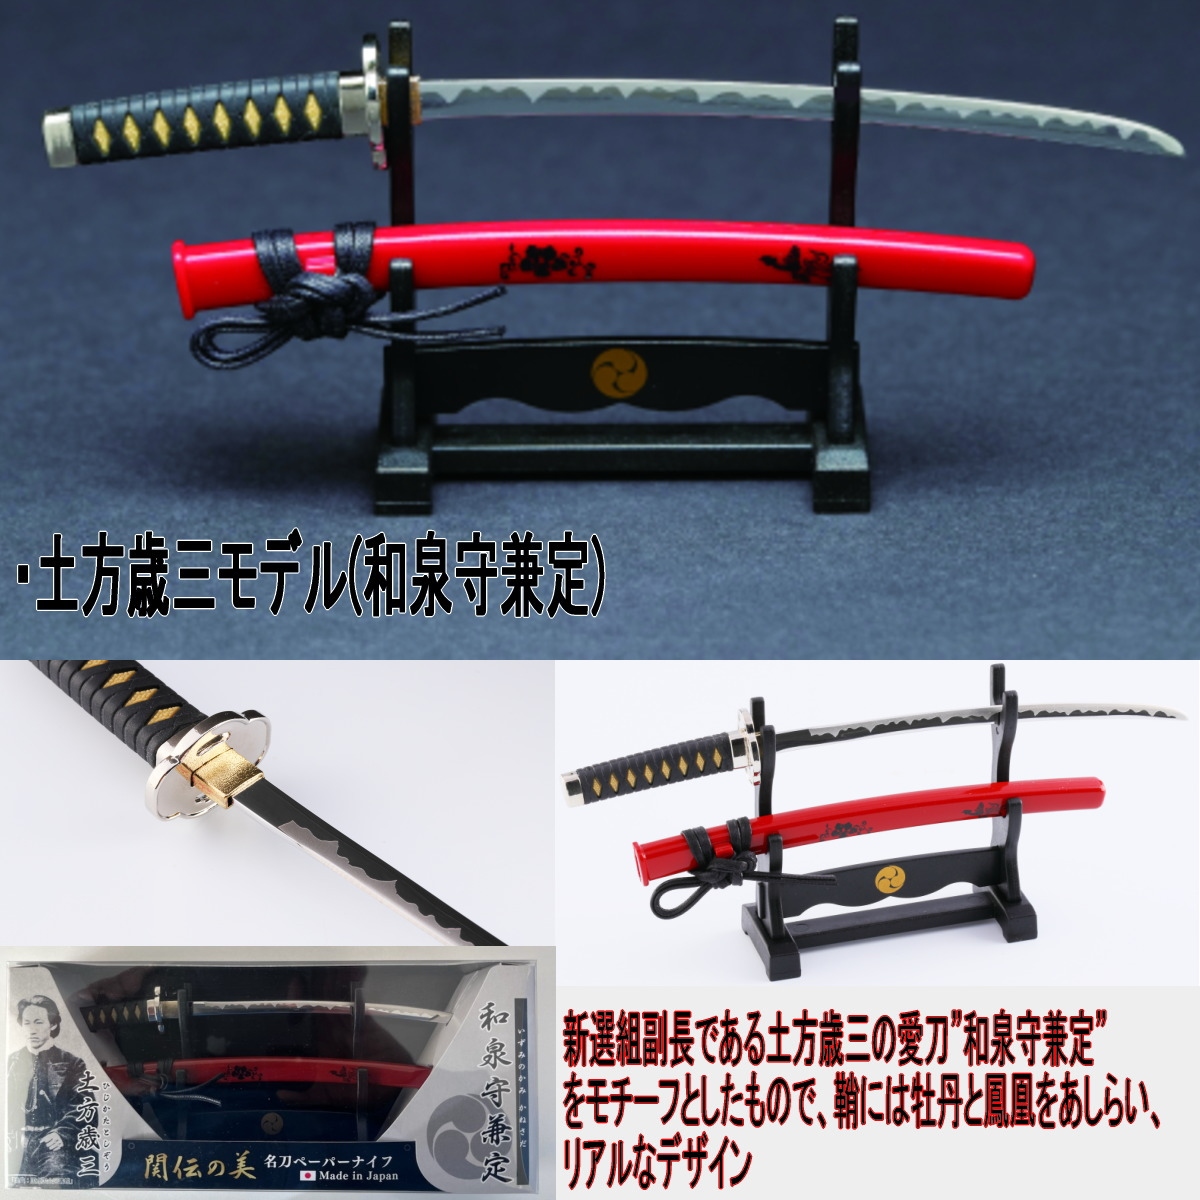 ni талон режущий инструмент новый выбор комплект японский меч нож для бумаги MT-34 все 4 вид . рисовое поле общий . близко глициния .. глициния один земля person лет три .. режущий инструмент сделано в Японии 